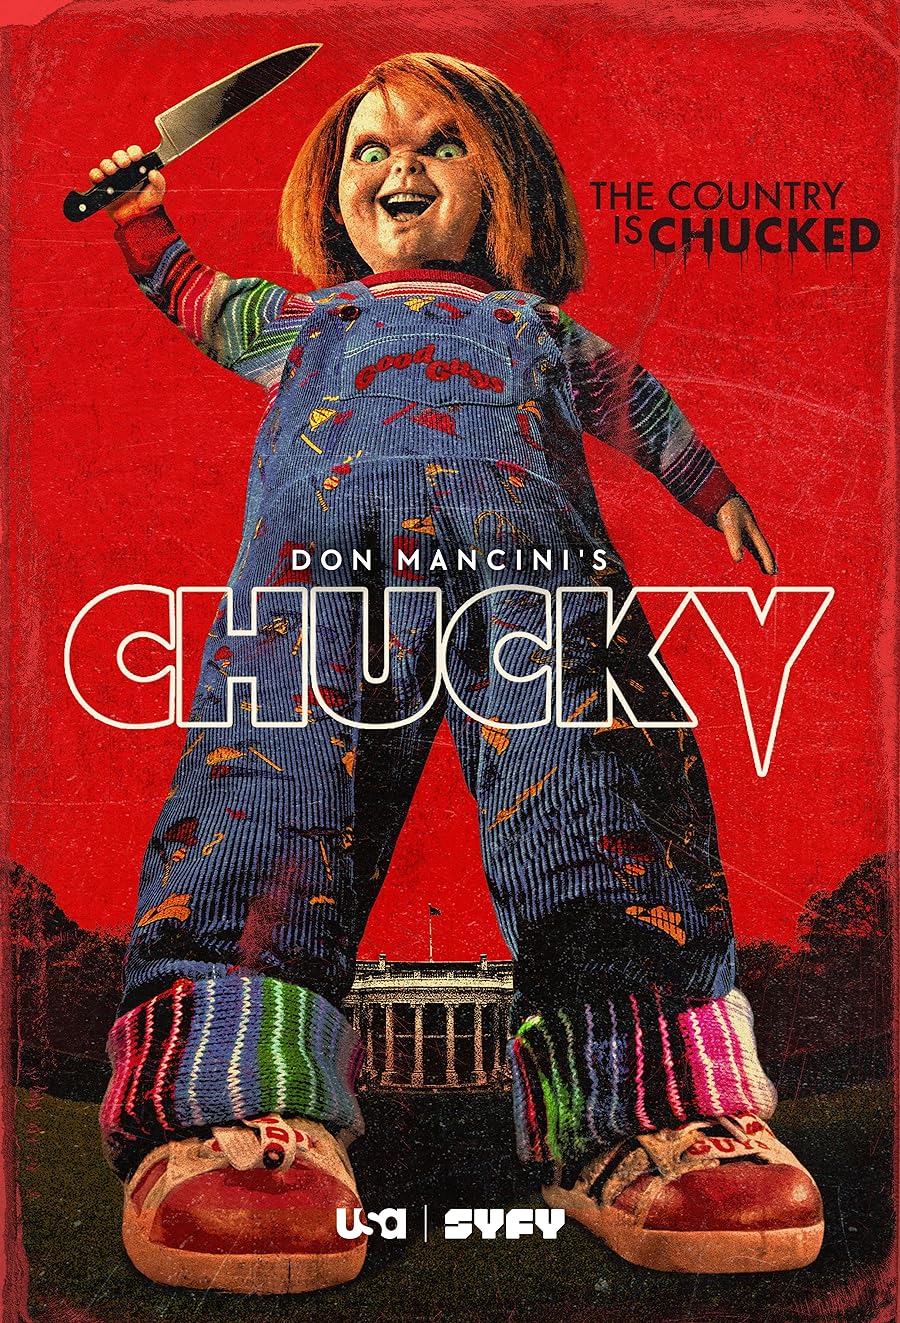 دانلود سریال Chucky